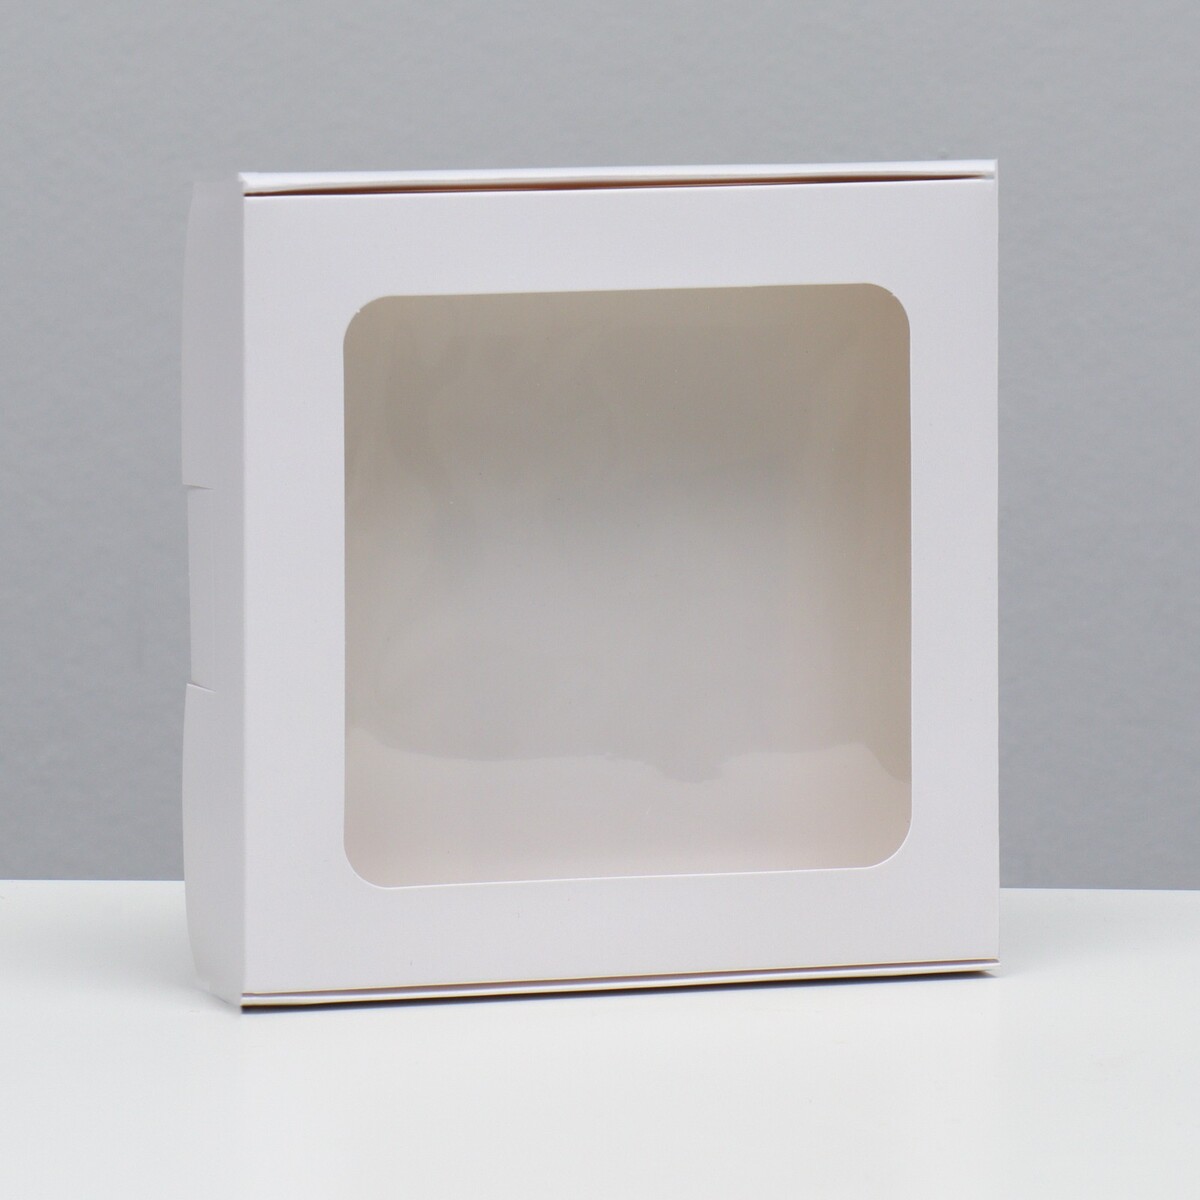 Коробка самосборная, белая, 16 х 16 х 3 см коробка под пироженое белая 17 х 17 х 10 см